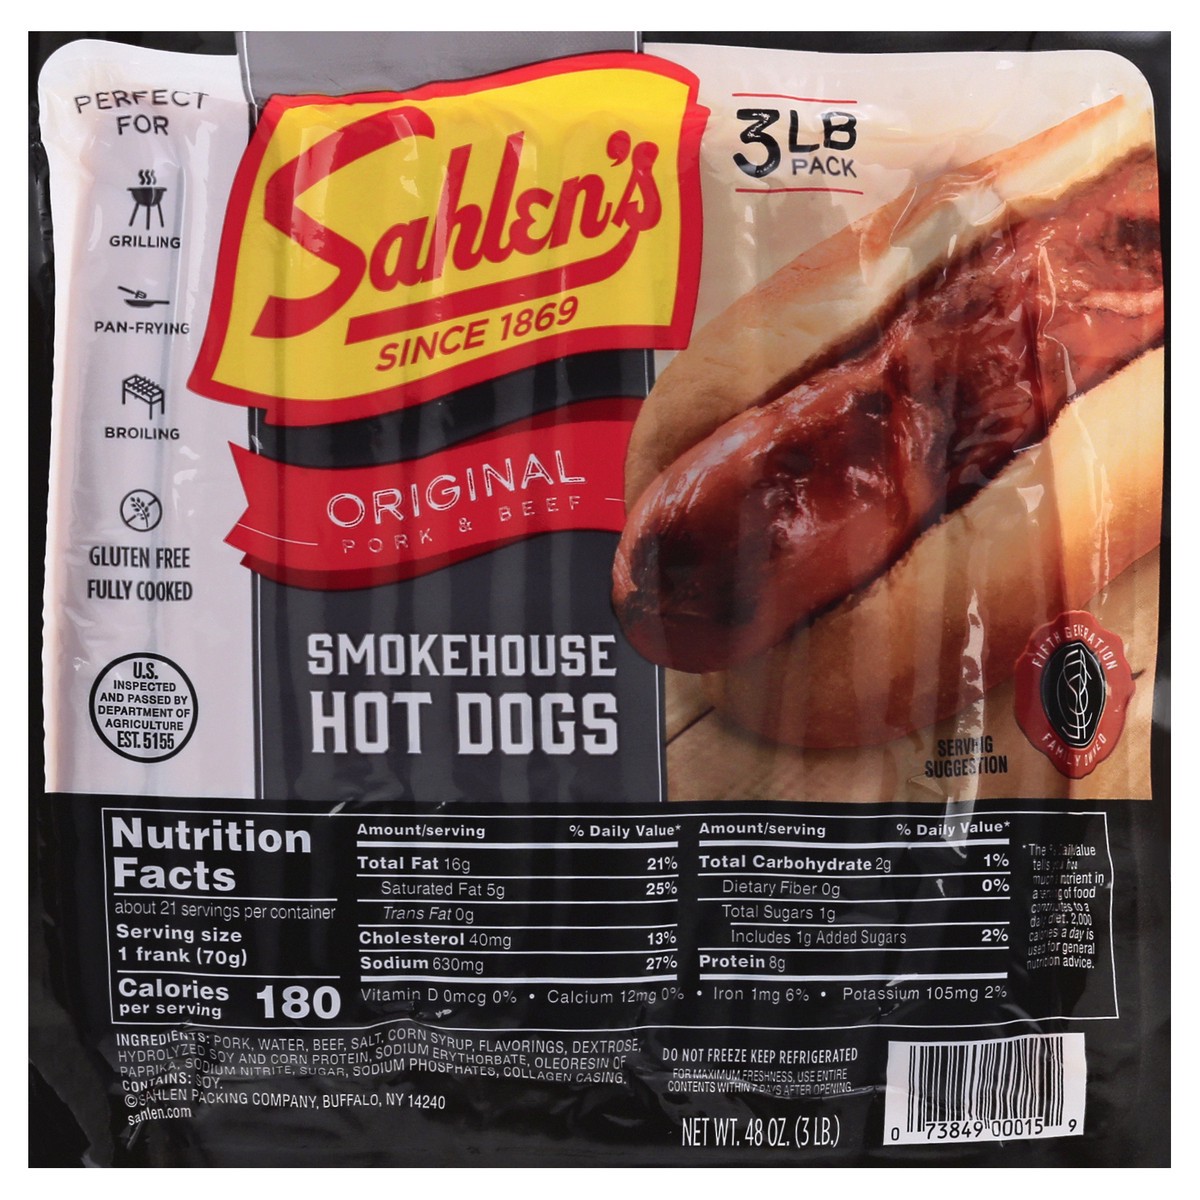 slide 13 of 13, Sahlen's Original Pork & Beef Smokehouse Hot Dogs 48 oz, 48 oz